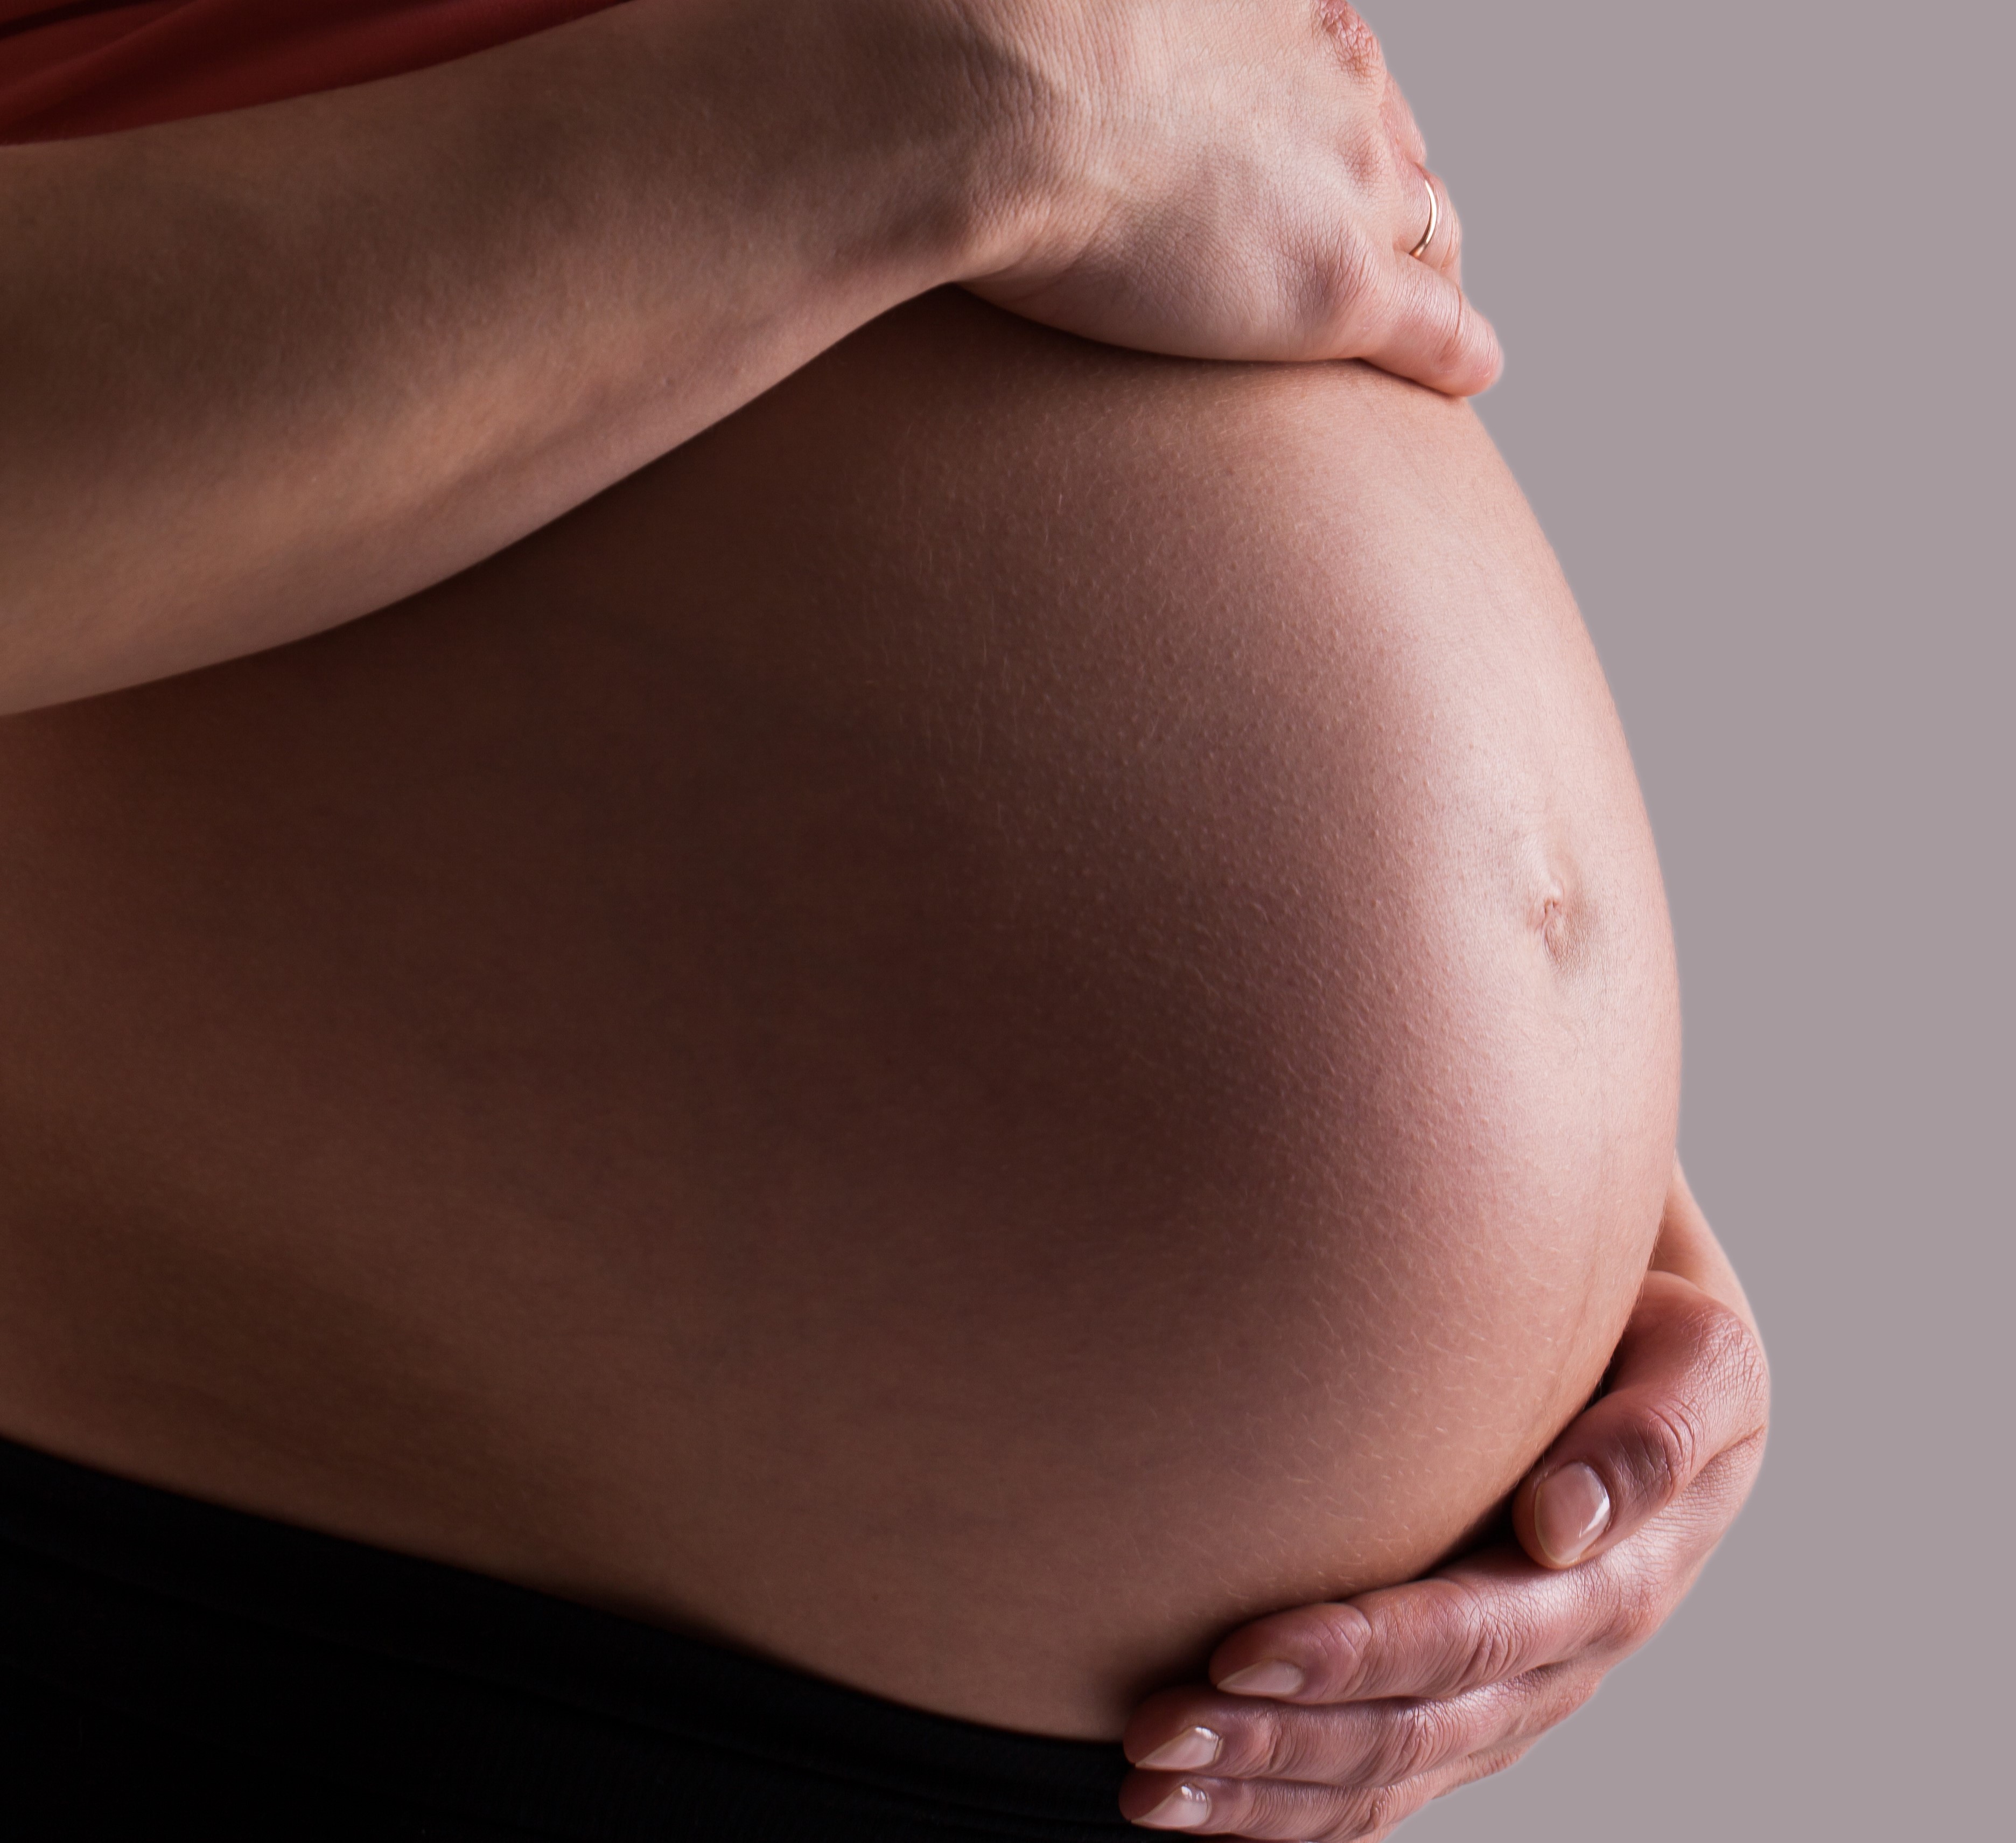 Mulheres estão se tornando mães cada vez mais tarde no estado de SP; idade média materna passou para 29,1 anos